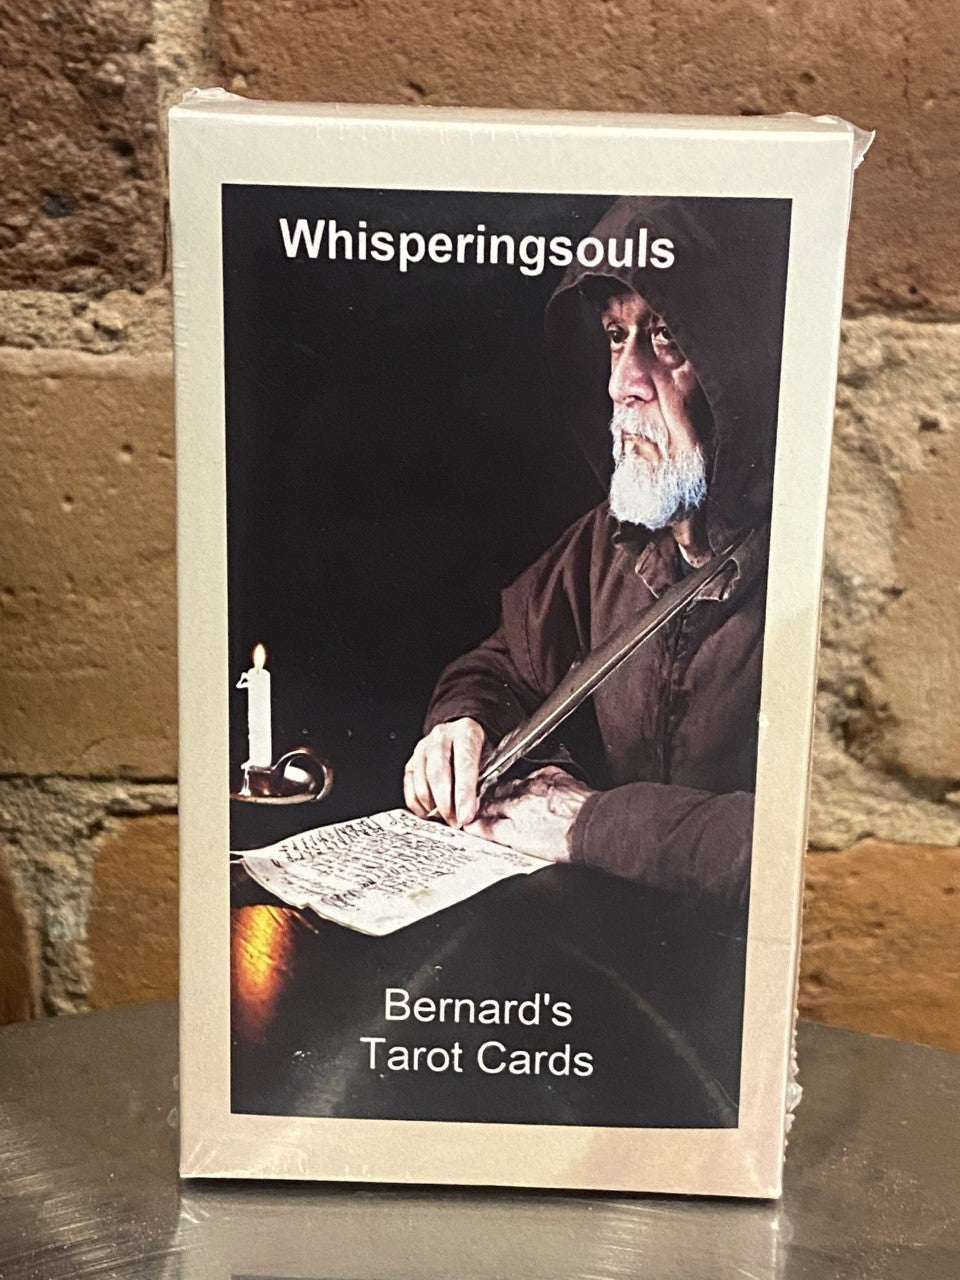 Bernard's Tarot Cards